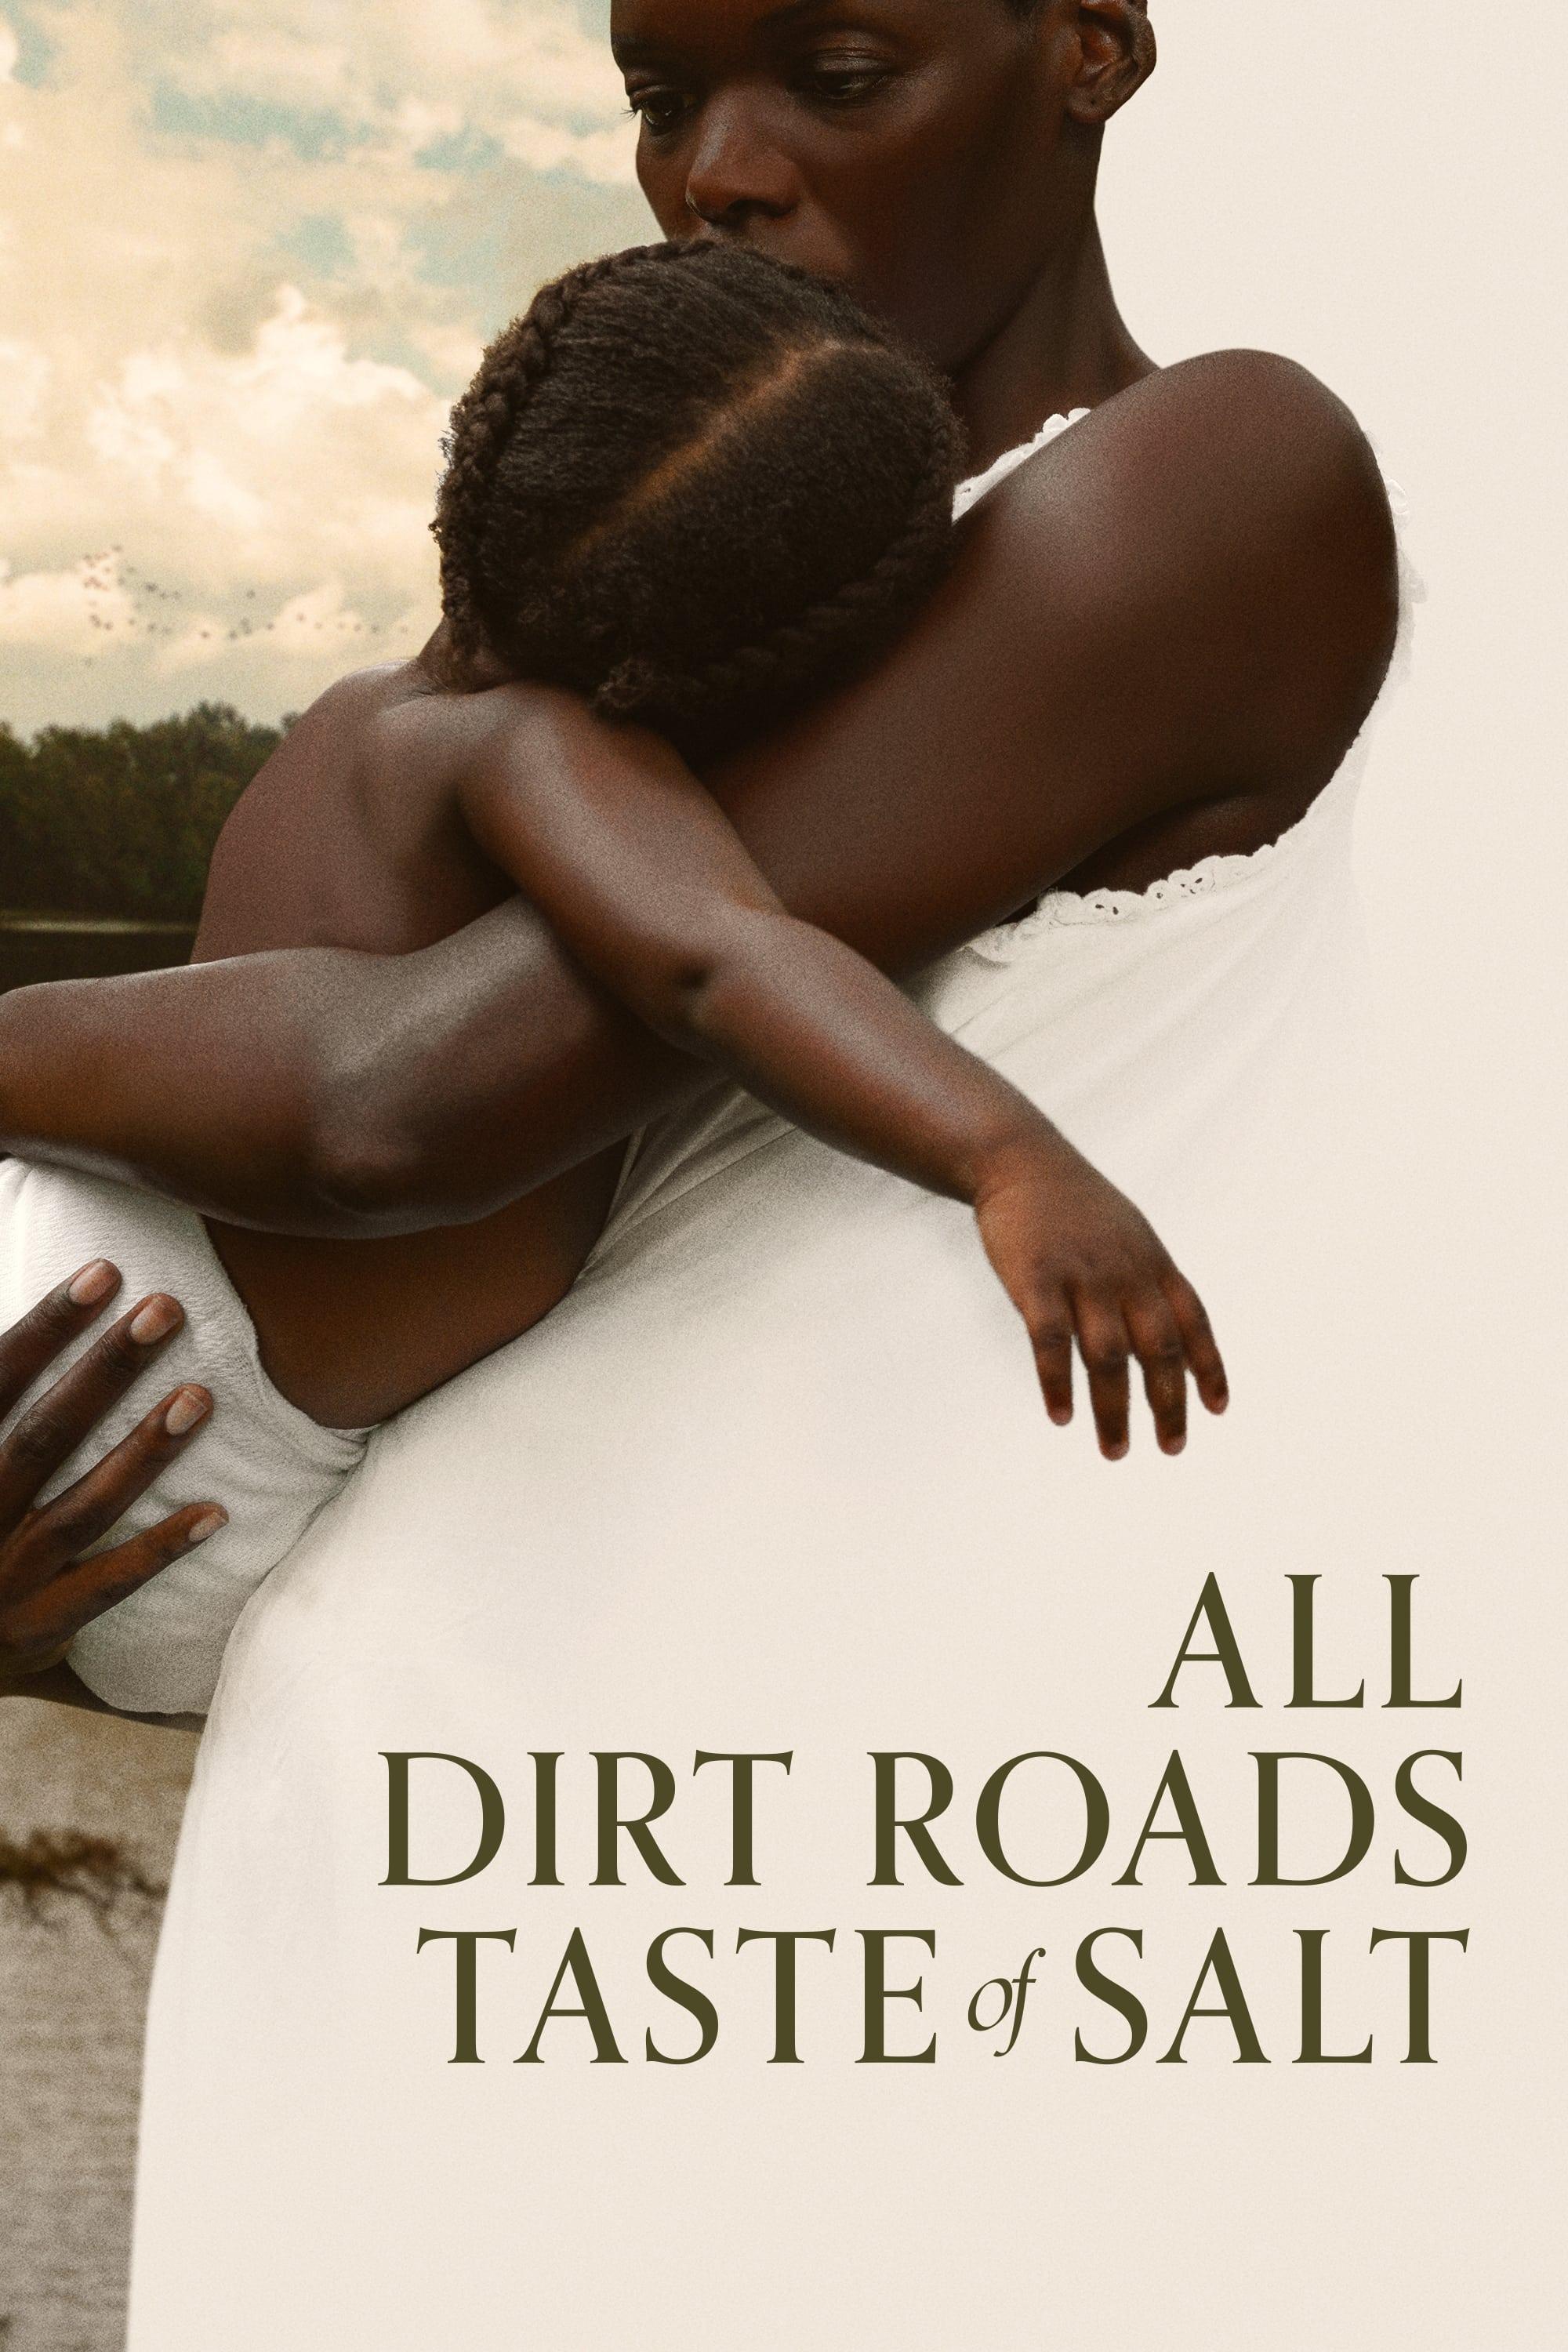 All Dirt Roads Taste of Salt poster